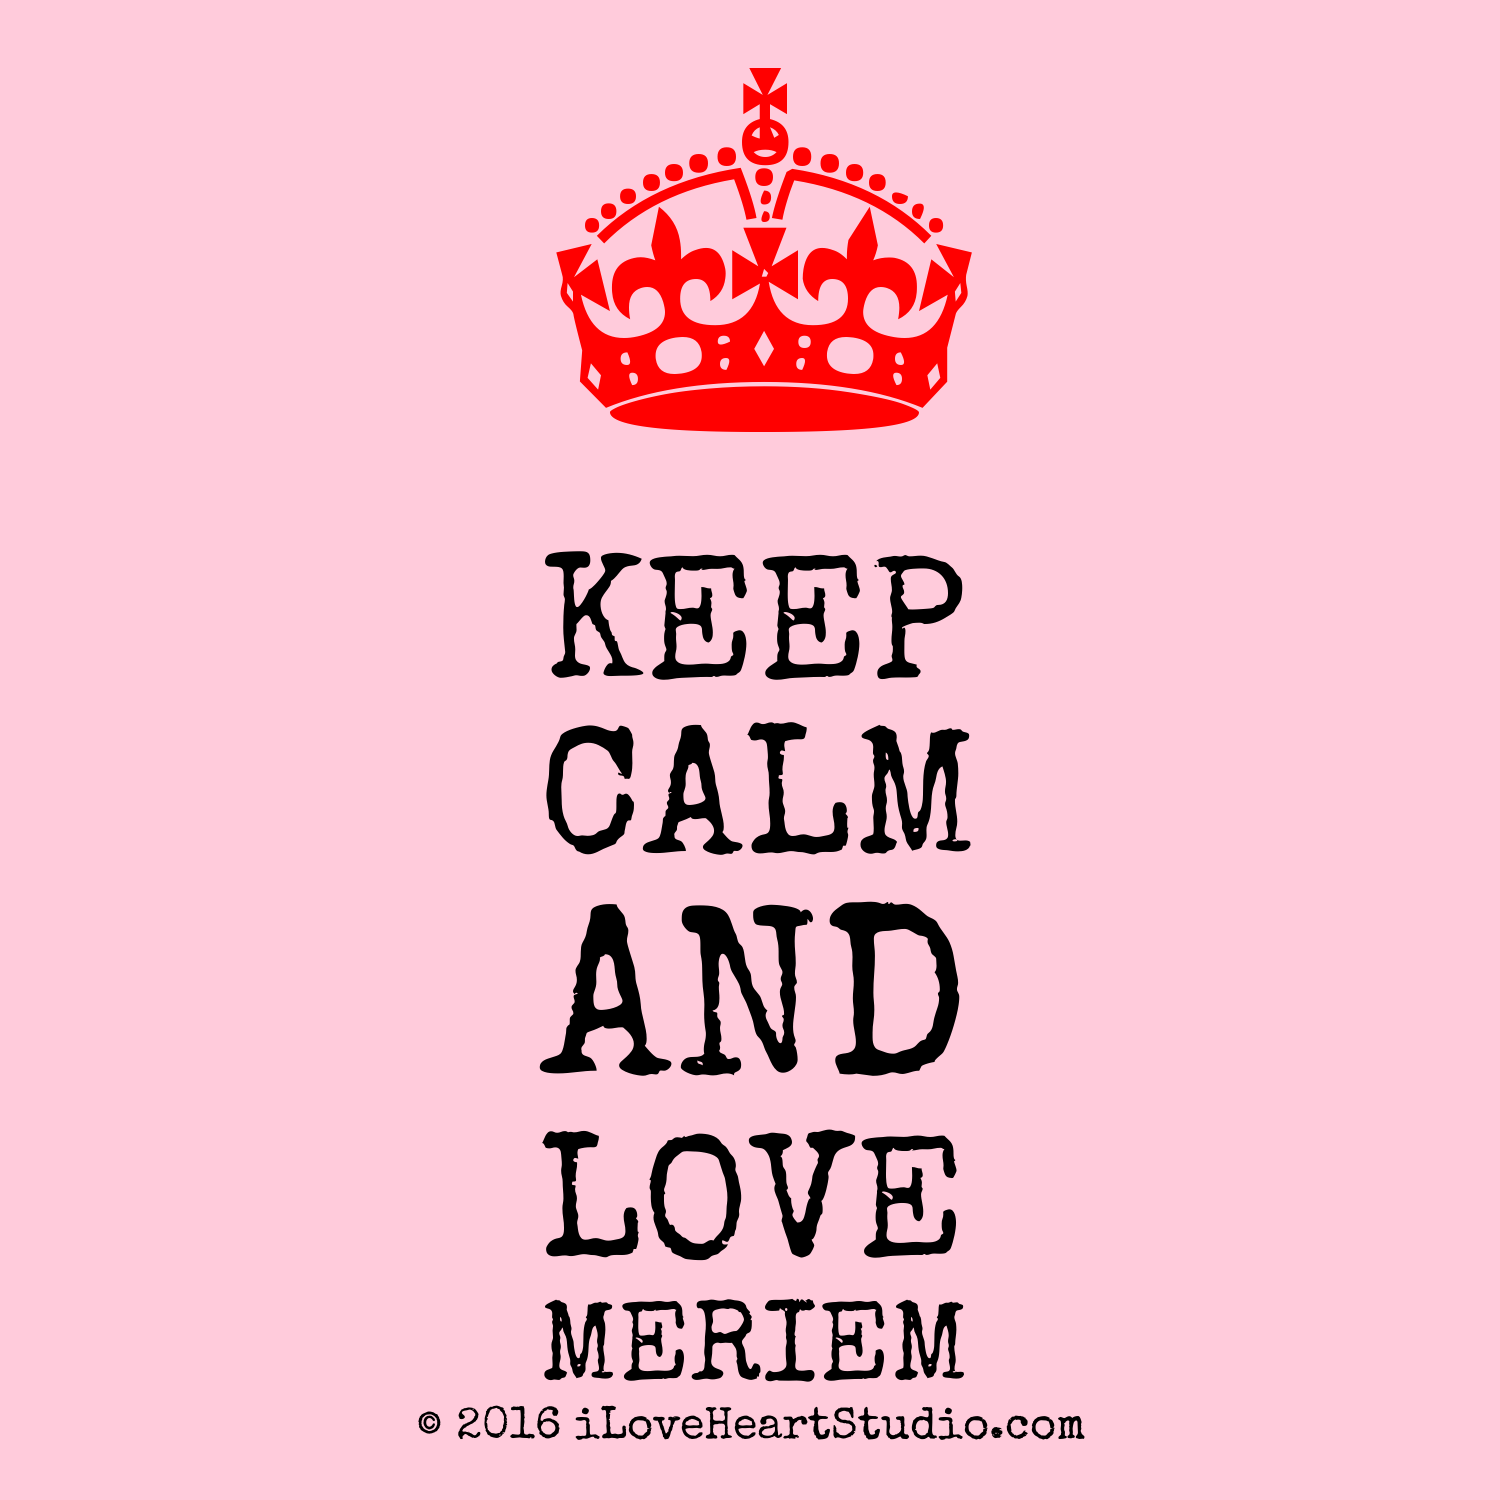 Résultat de recherche d'images pour "keep calm and love meriem"